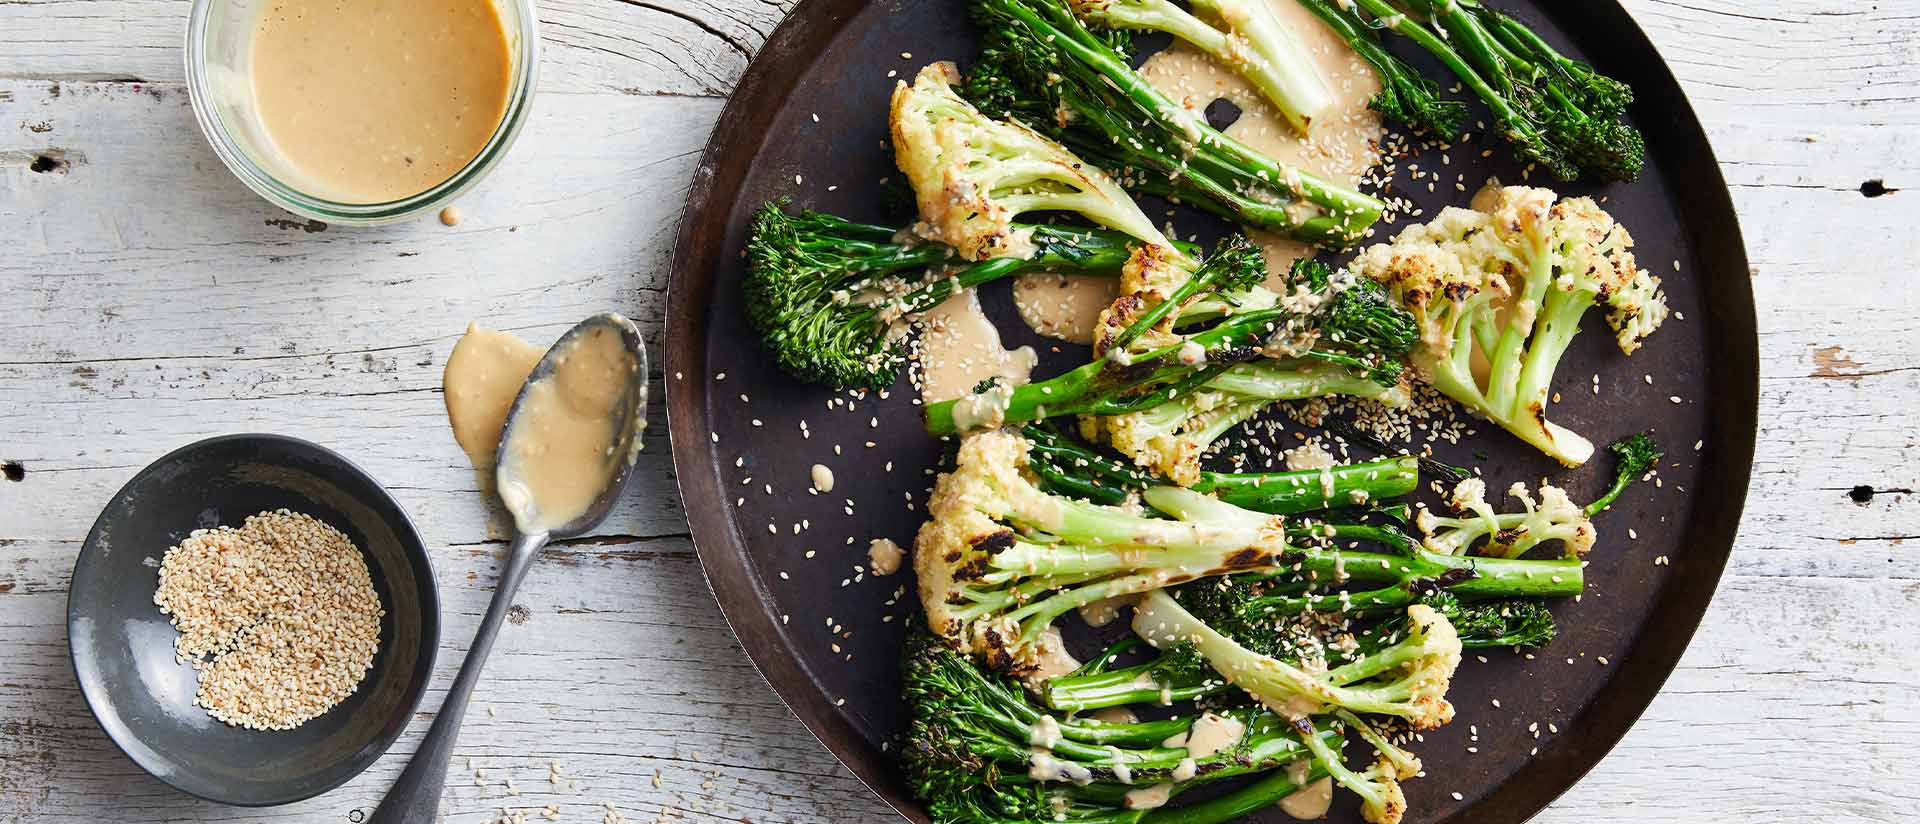 Barbecued Broccolini Fioretto With Sesame Miso Dressing Recipe